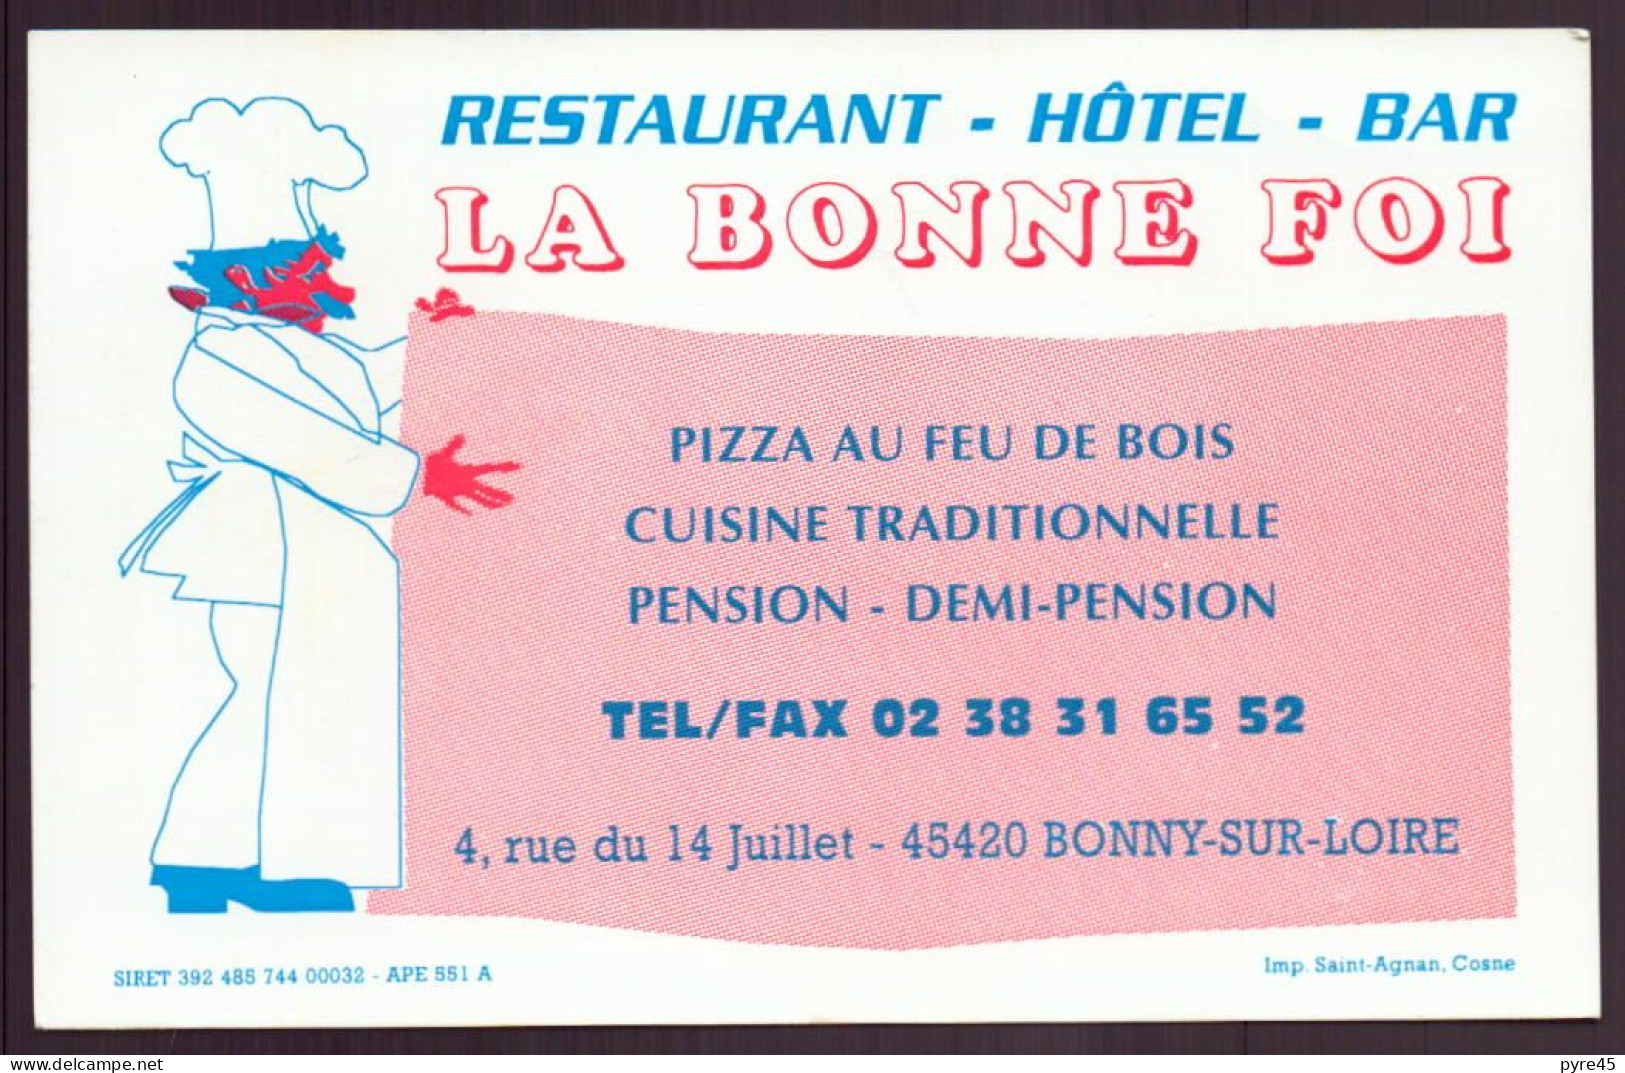 CARTE PUBLICITAIRE LA BONNE FOI A BONNY SUR LOIRE RESTAURANT HOTEL BAR - Cartes De Visite